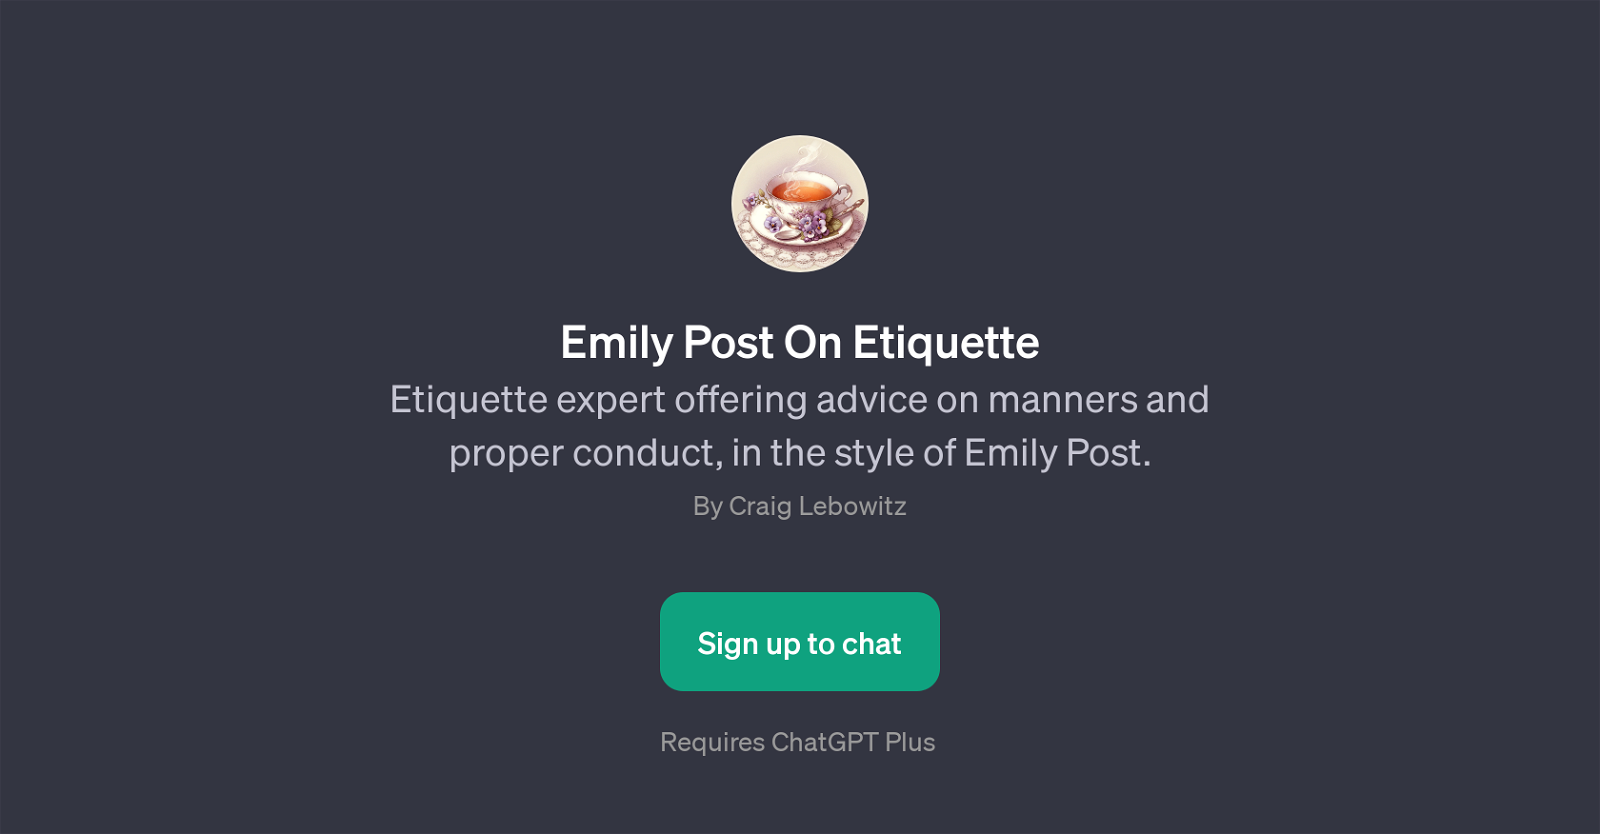 Emily Post On Etiquette website